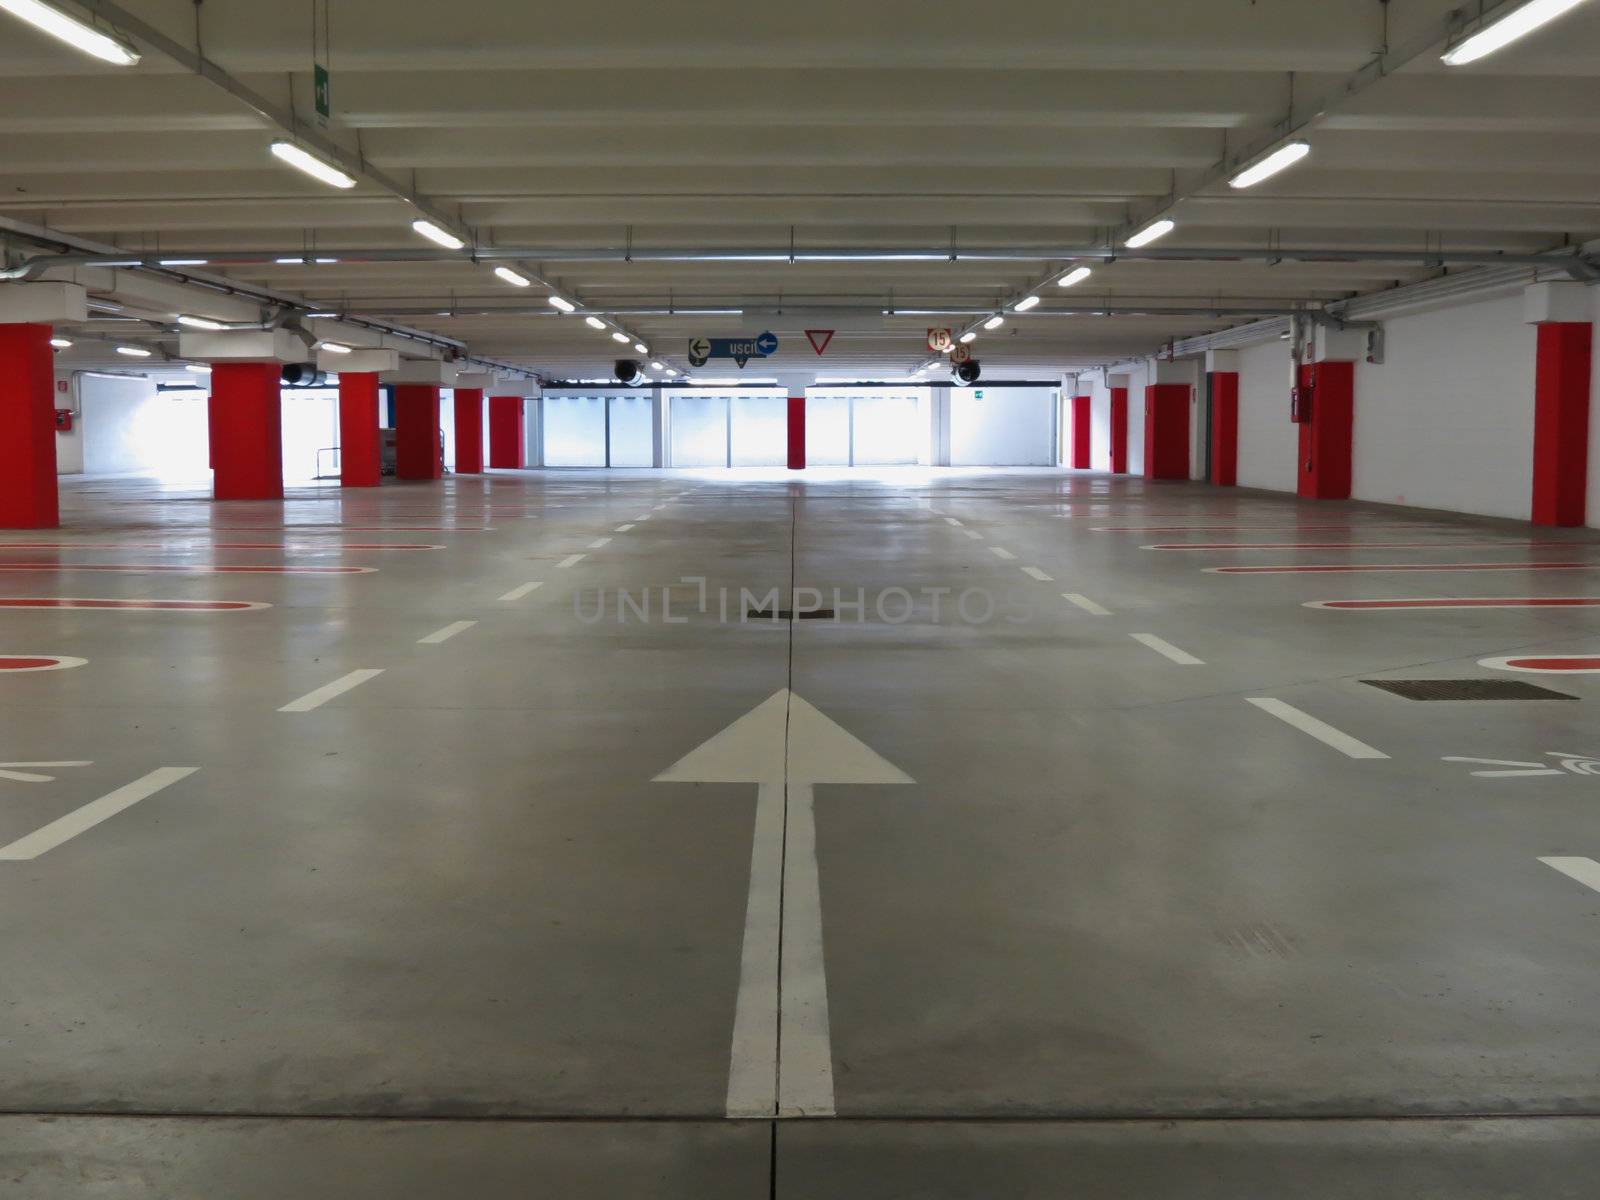 Underground parking  by lsantilli